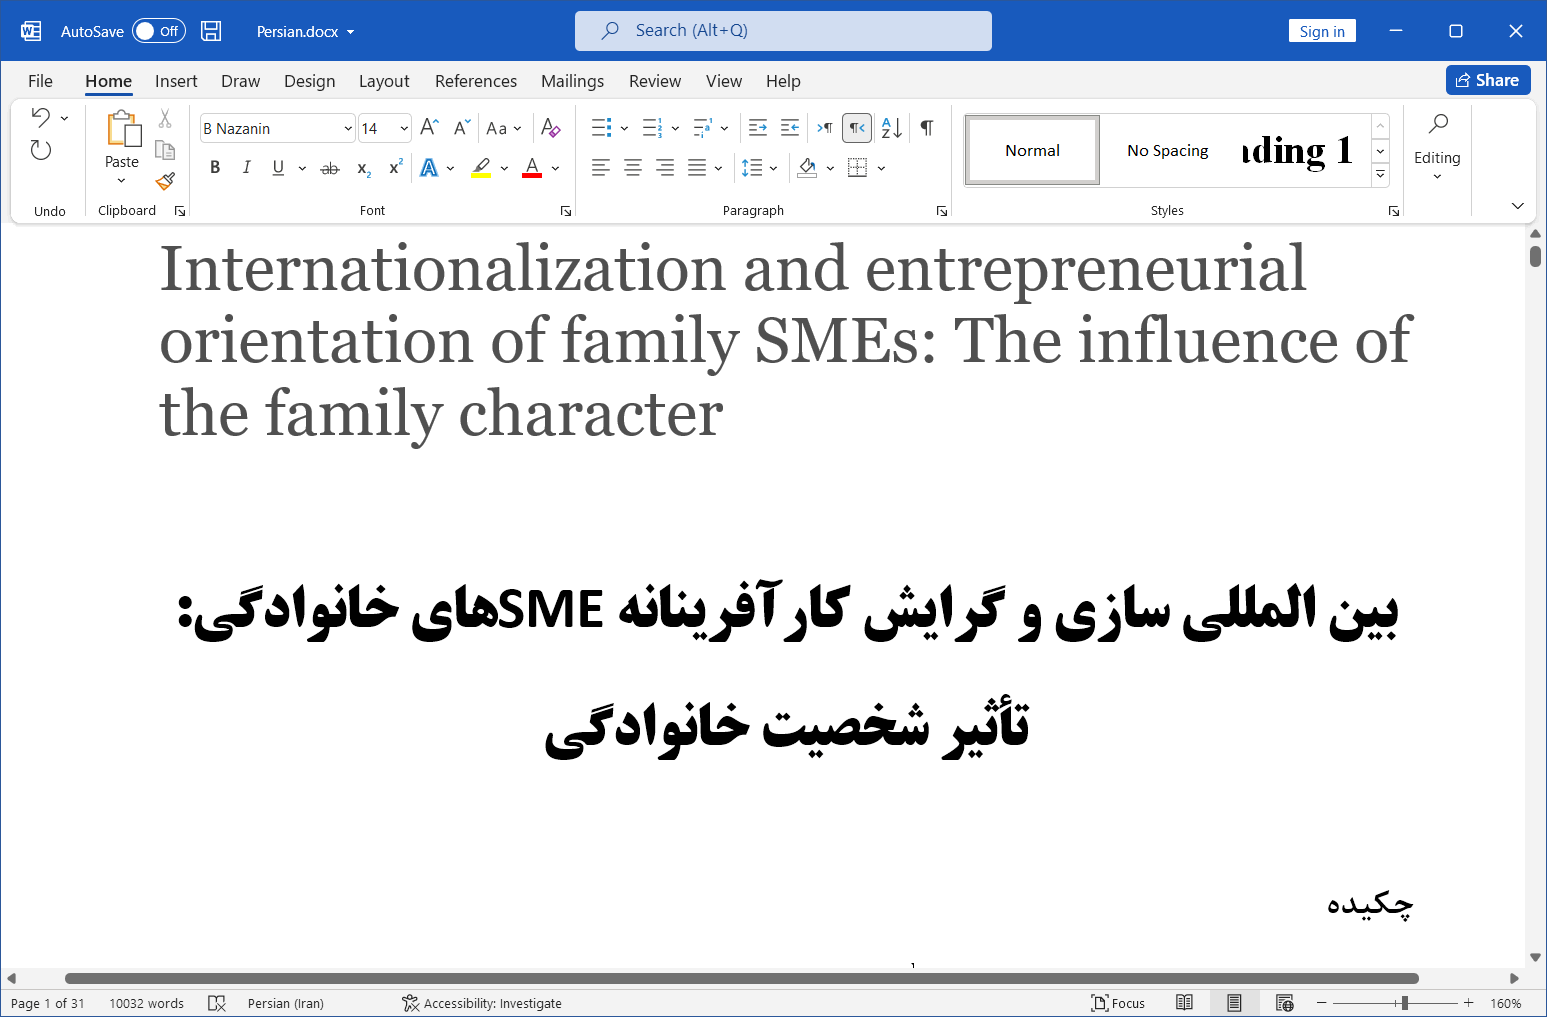 بین المللی سازی و گرایش کارآفرینانه SMEهای خانوادگی: تأثیر شخصیت خانوادگی